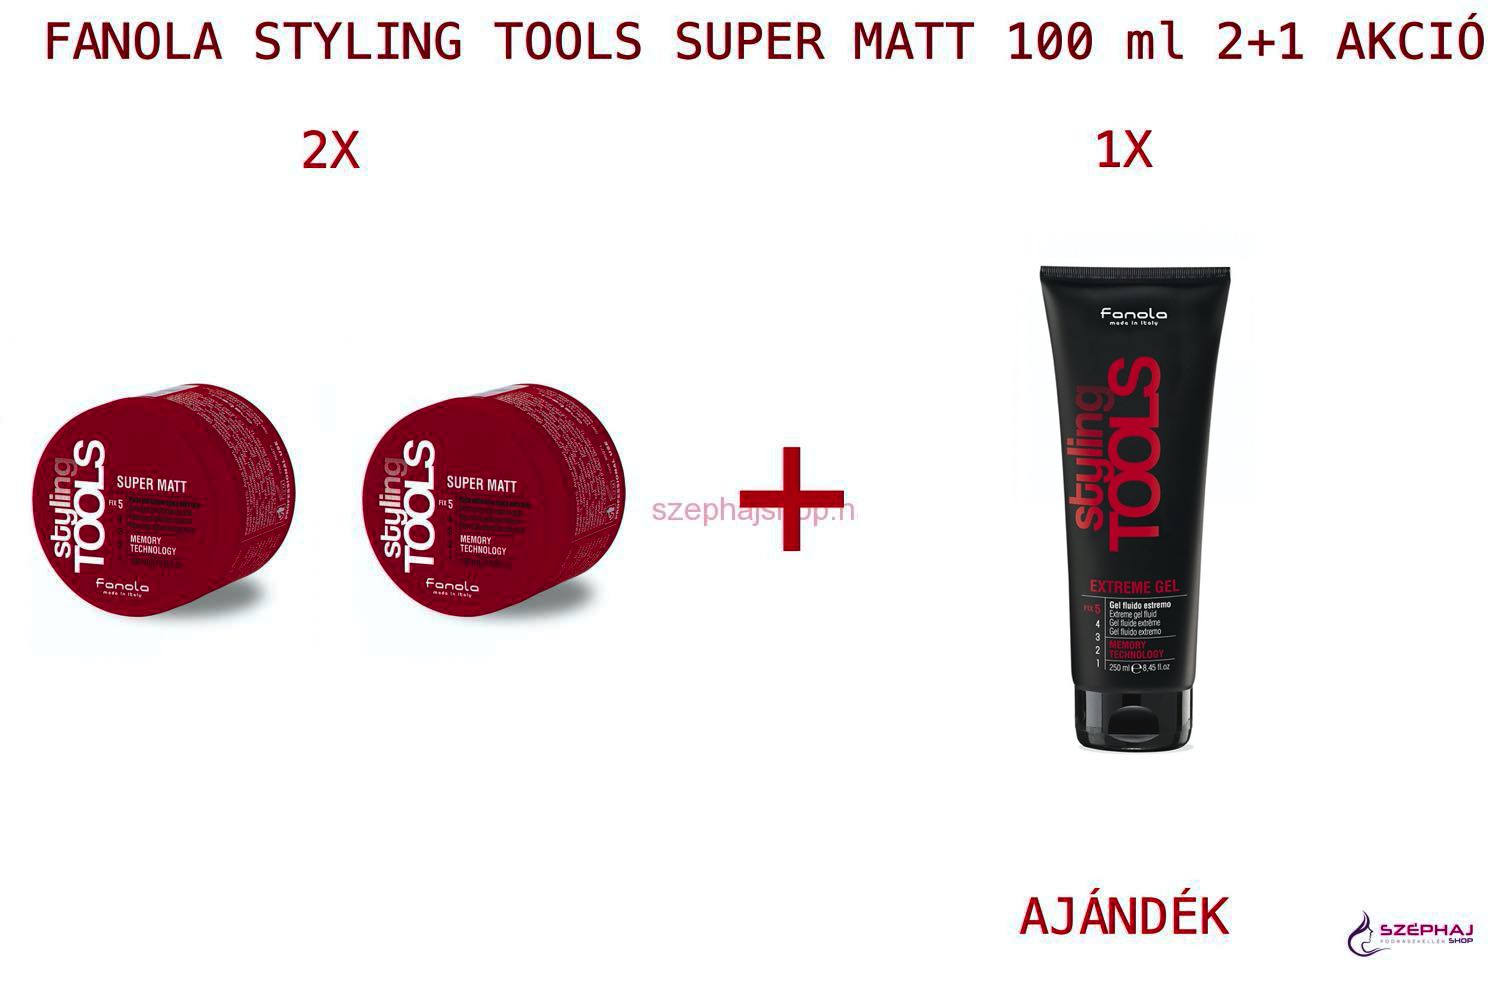 FANOLA Styling Tools Super Matt Wax 100 ml 2+1 AKCIÓ